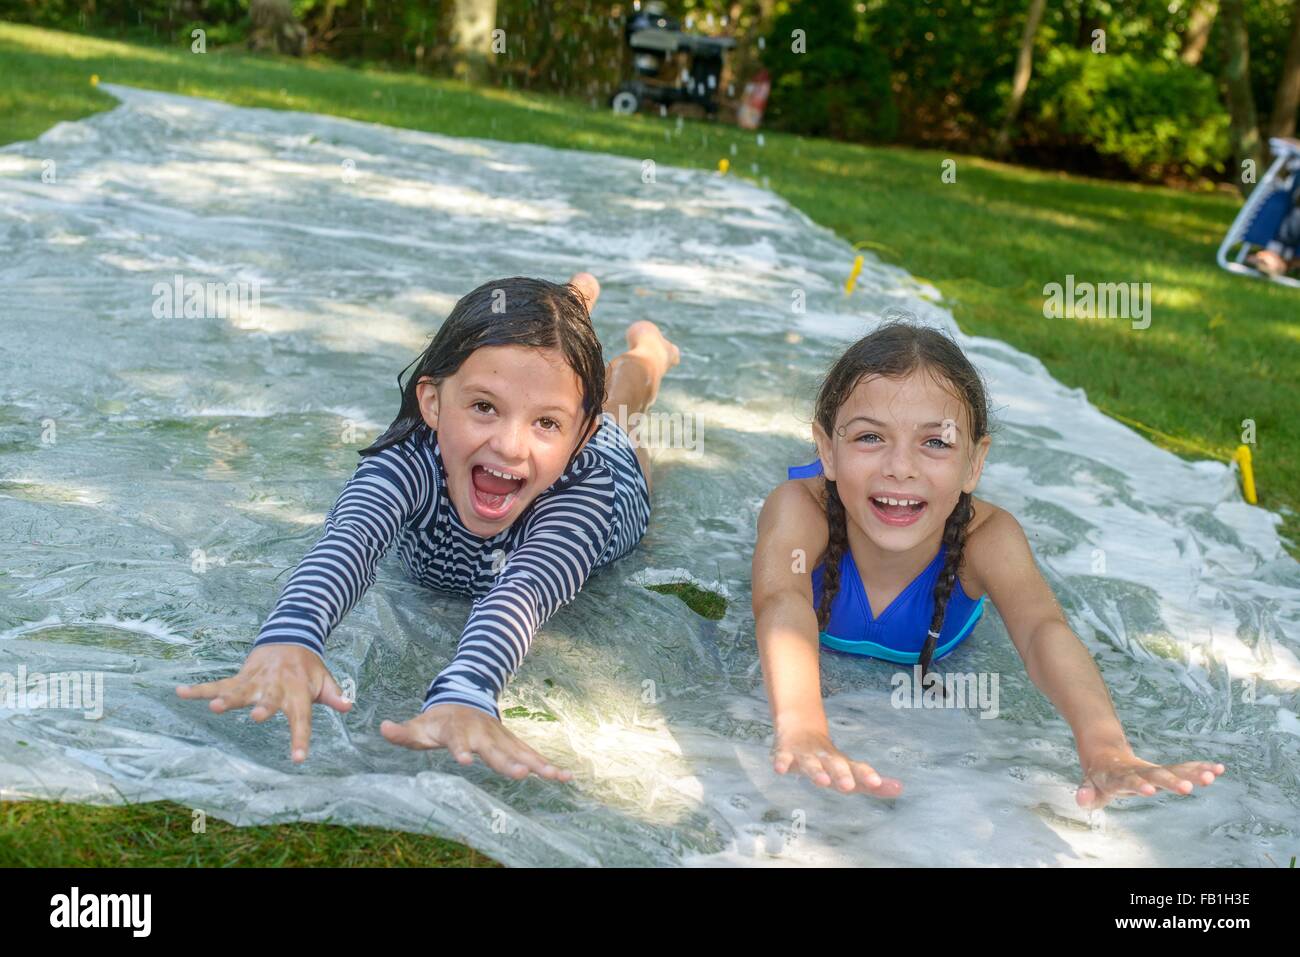 Zwei Mädchen gleiten auf Slip n slide Wasser Matte im Garten Stockfoto